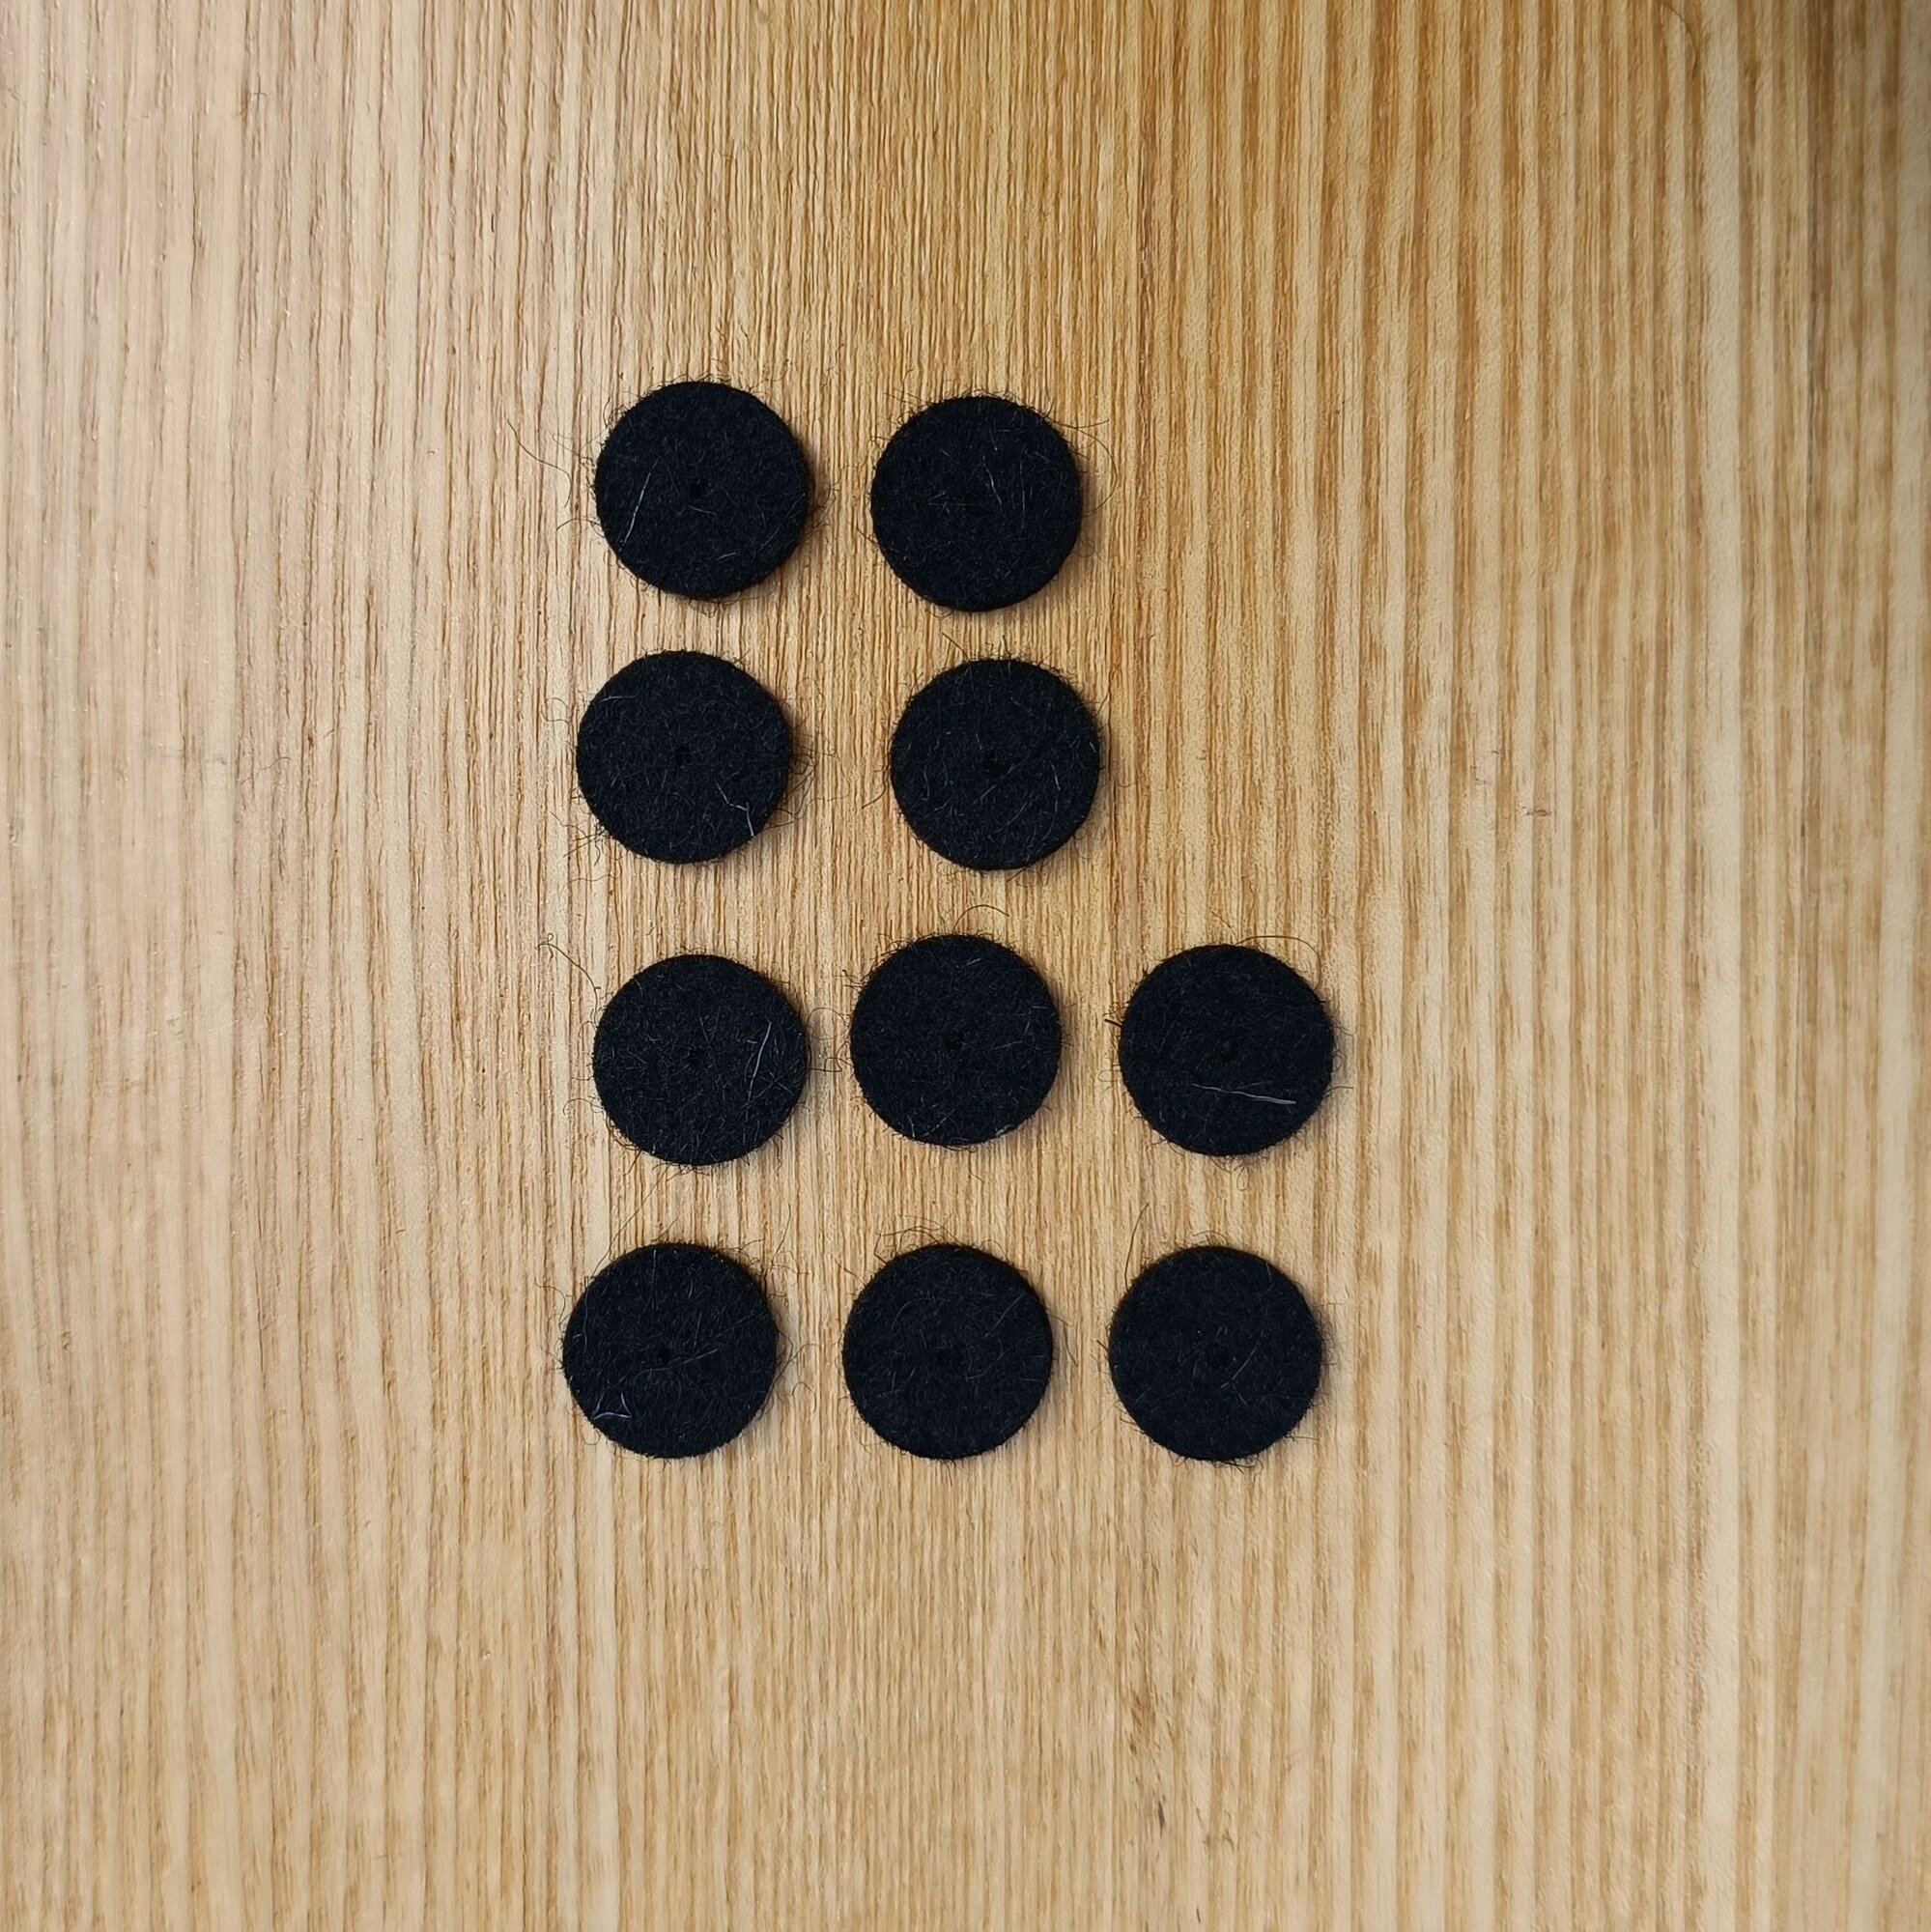 10 шт. демпферов чёрных под кнопки диаметром 14мм, для правой клавиатуры гармони, баяна